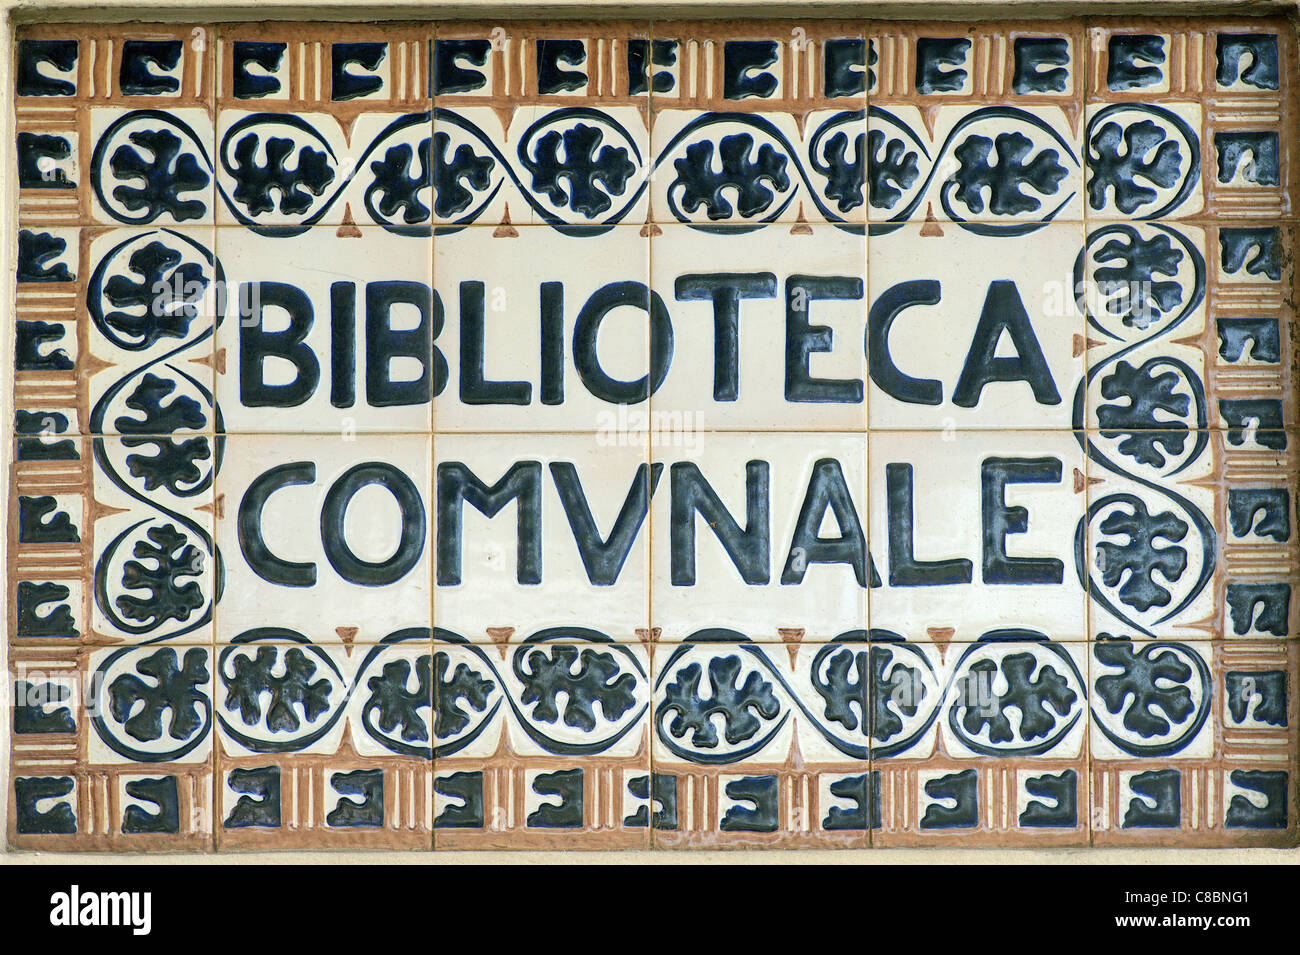 Biblioteca Comunale Faenza Italien Gemeinschaftsbibliothek Namen gemacht der Fliesen Stockfoto